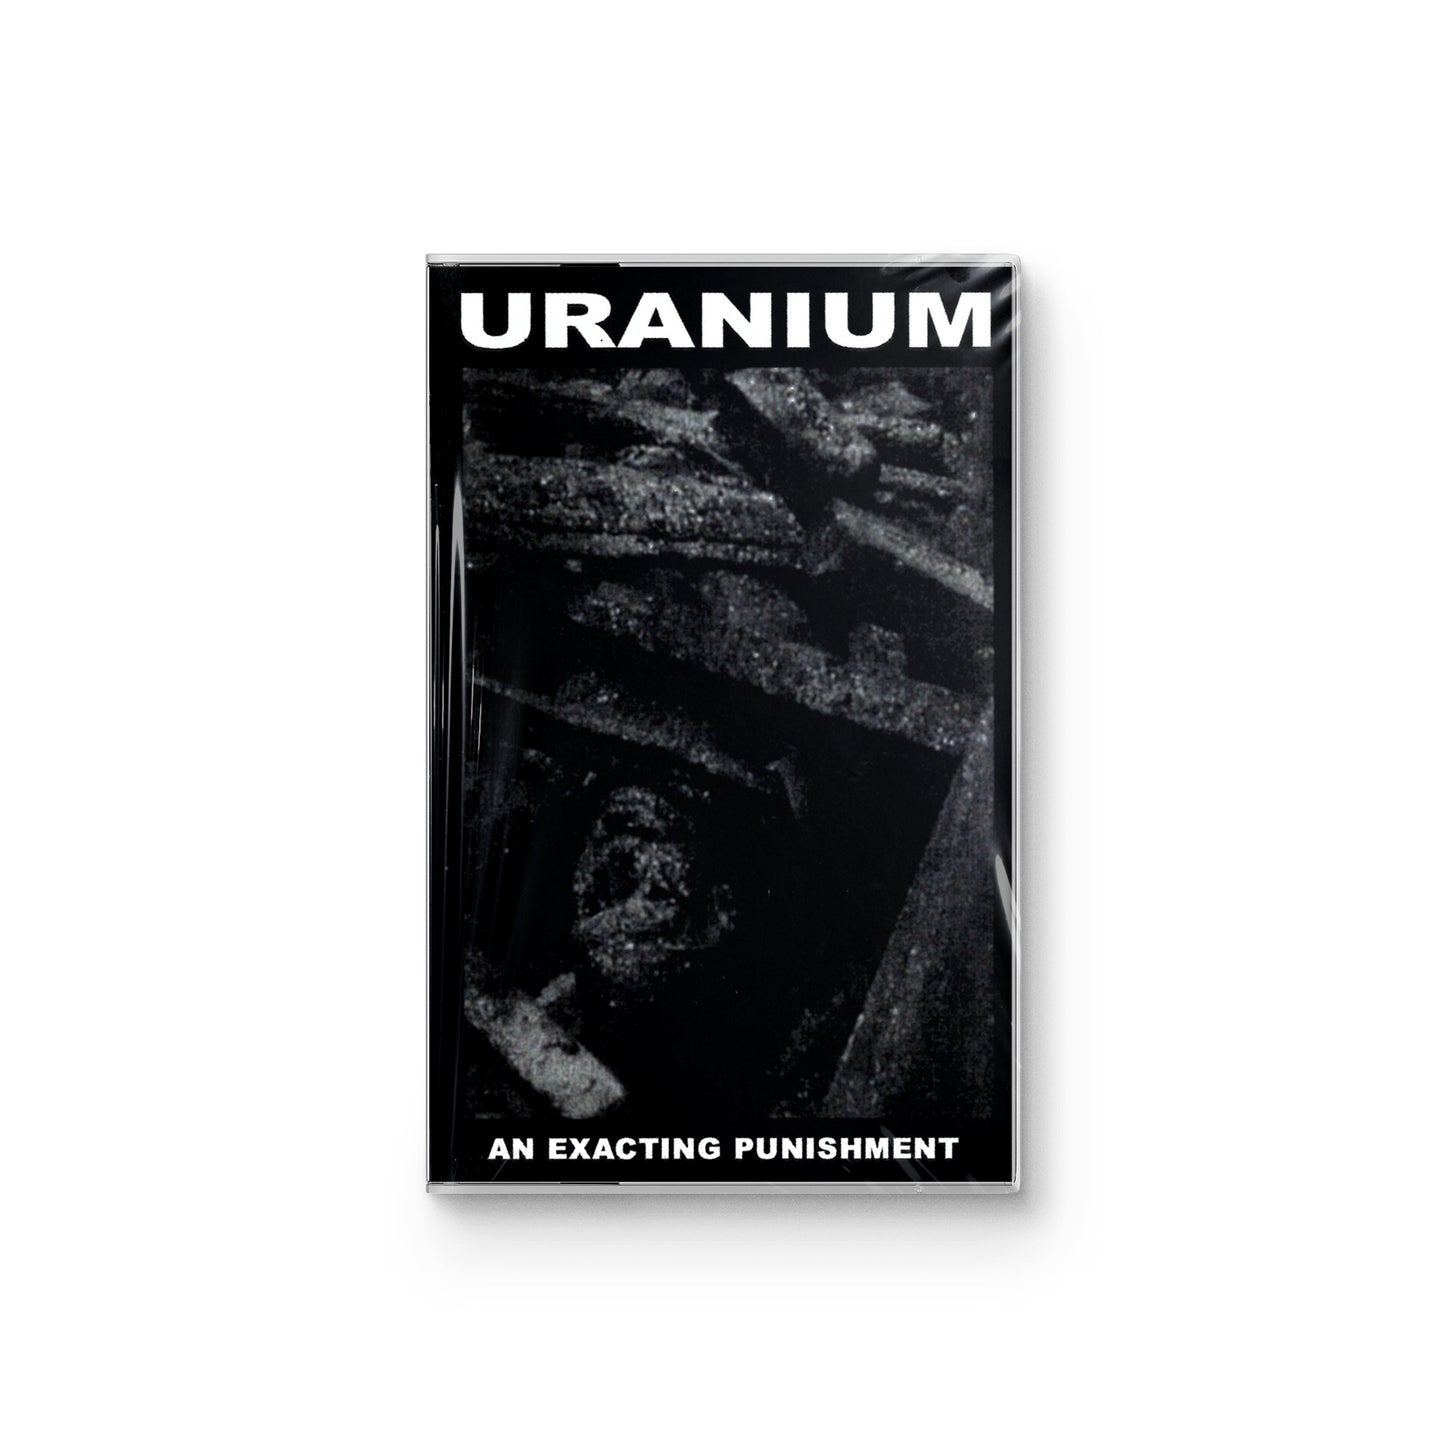 Uranium "An Exacting Punishment" CASSETTE